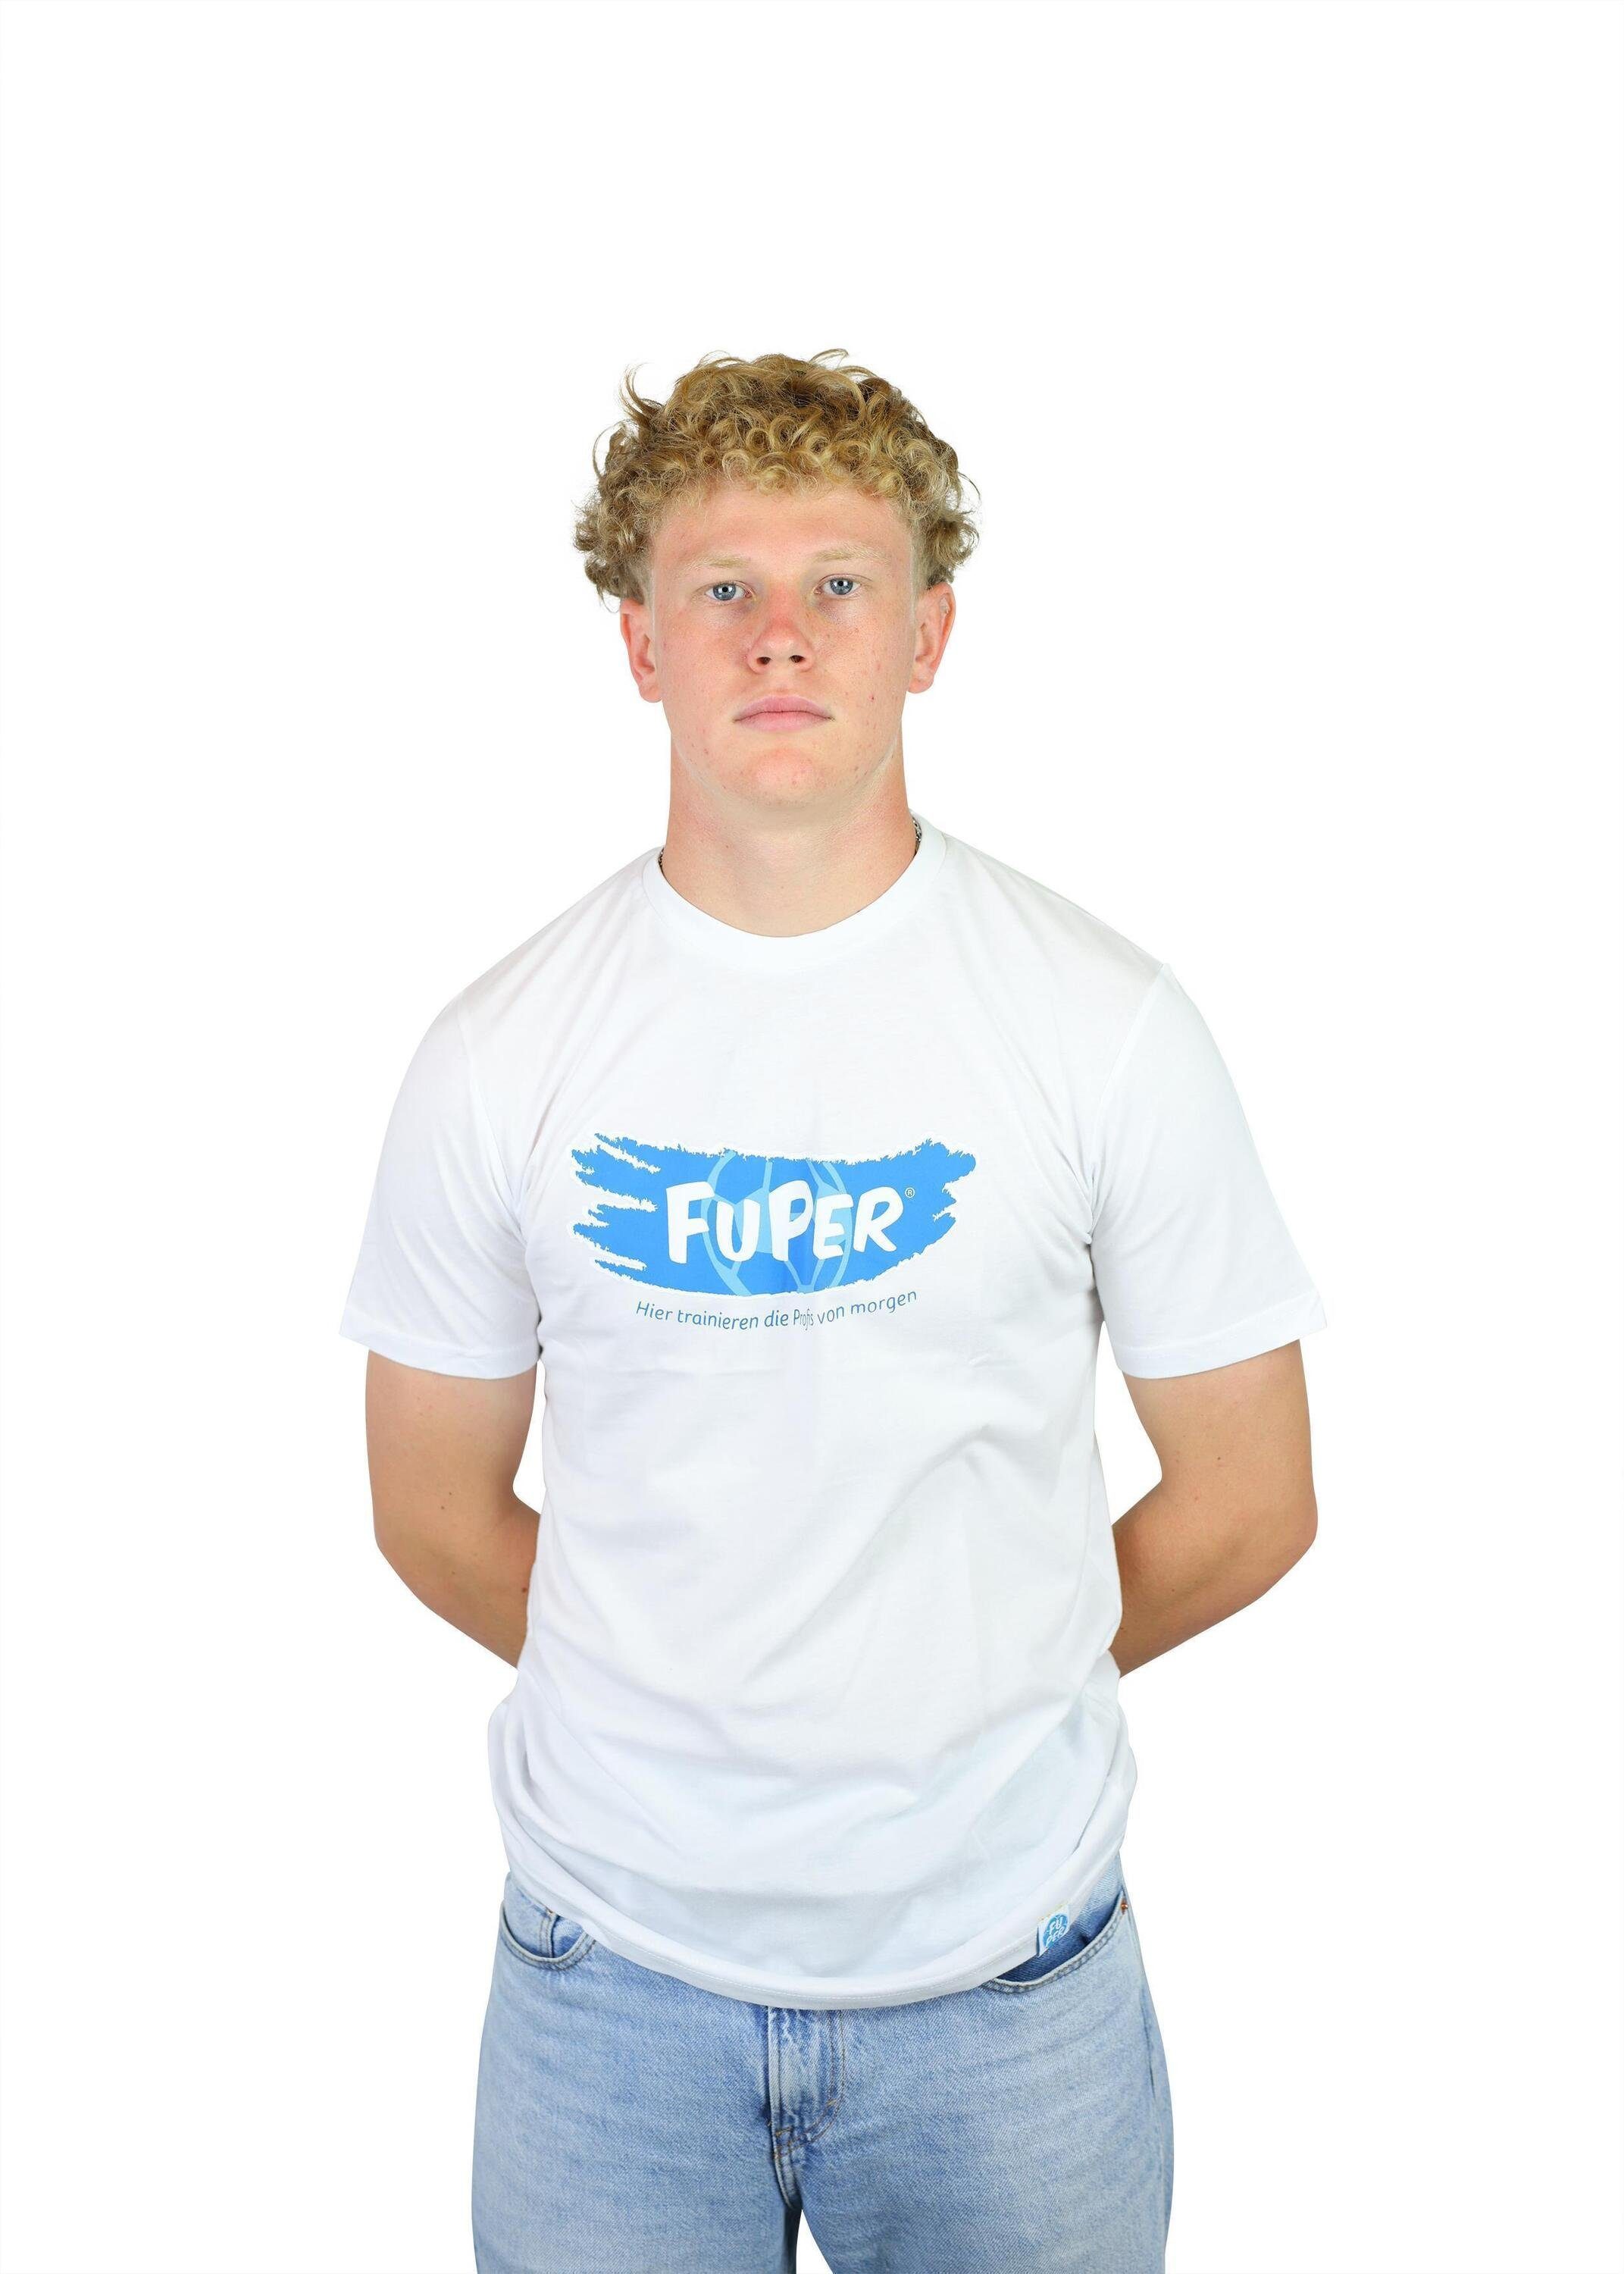 FuPer T-Shirt Kinder, Jugend aus Baumwolle, Fußball, White Tarik für